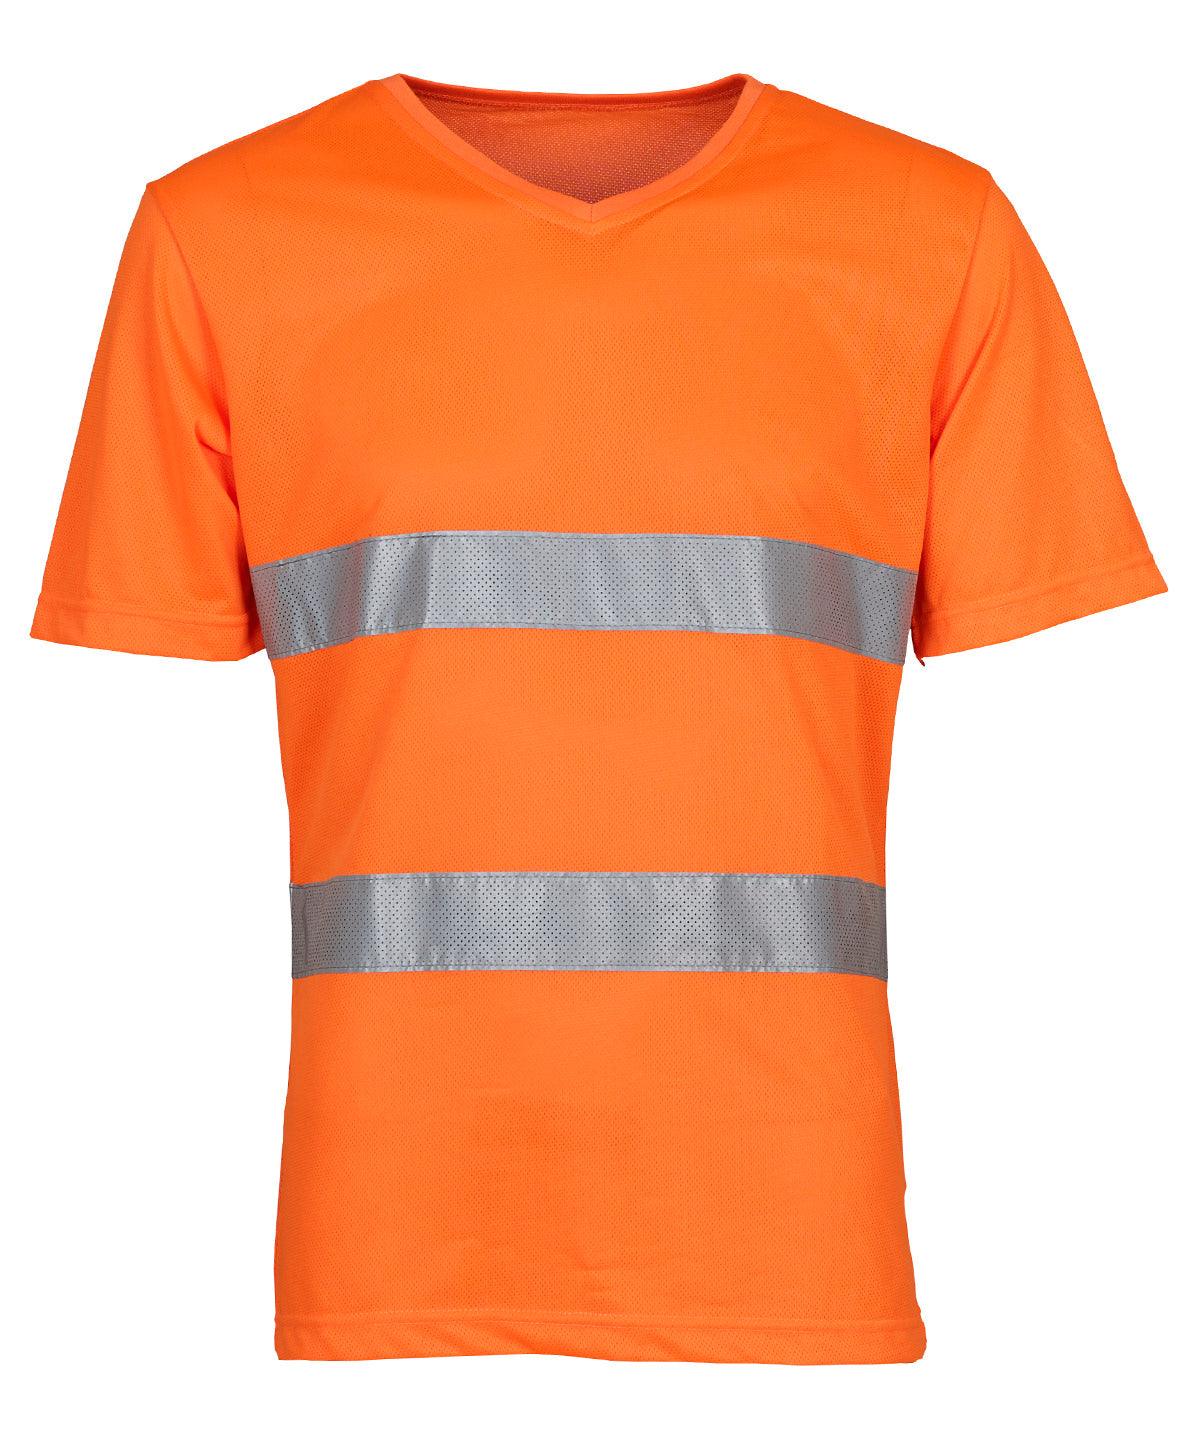 Orange - Hi-vis top cool super light v-neck t-shirt (HVJ910) T-Shirts Yoko Plus Sizes, Safetywear, Workwear Schoolwear Centres